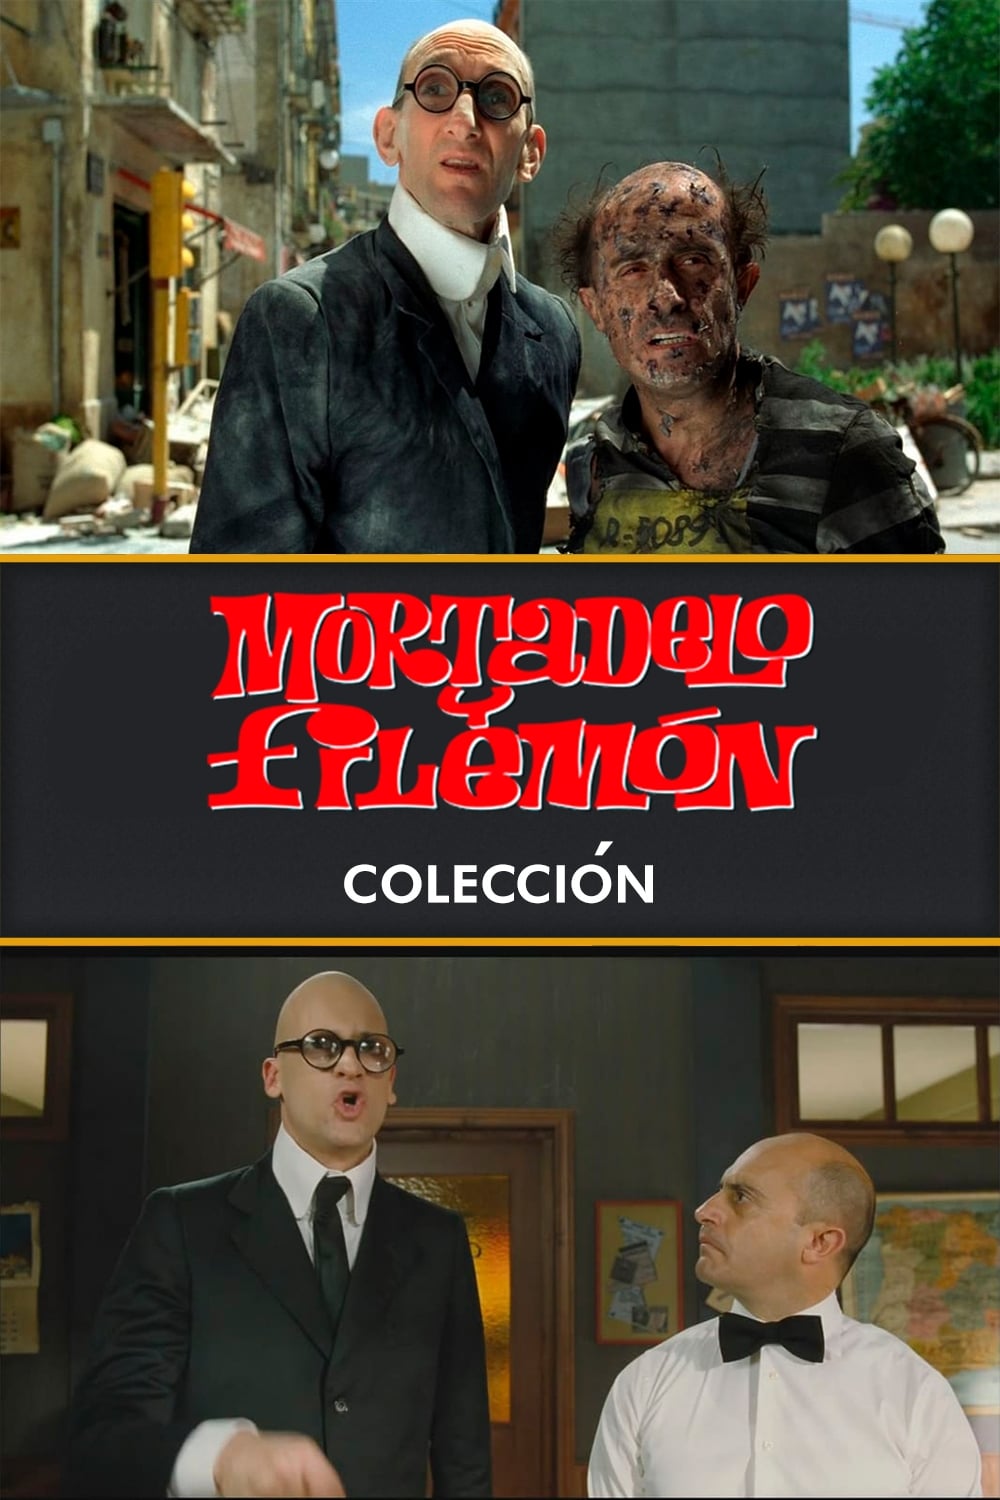 Todas las películas de la saga Mortadelo y Filemón - Colección son en